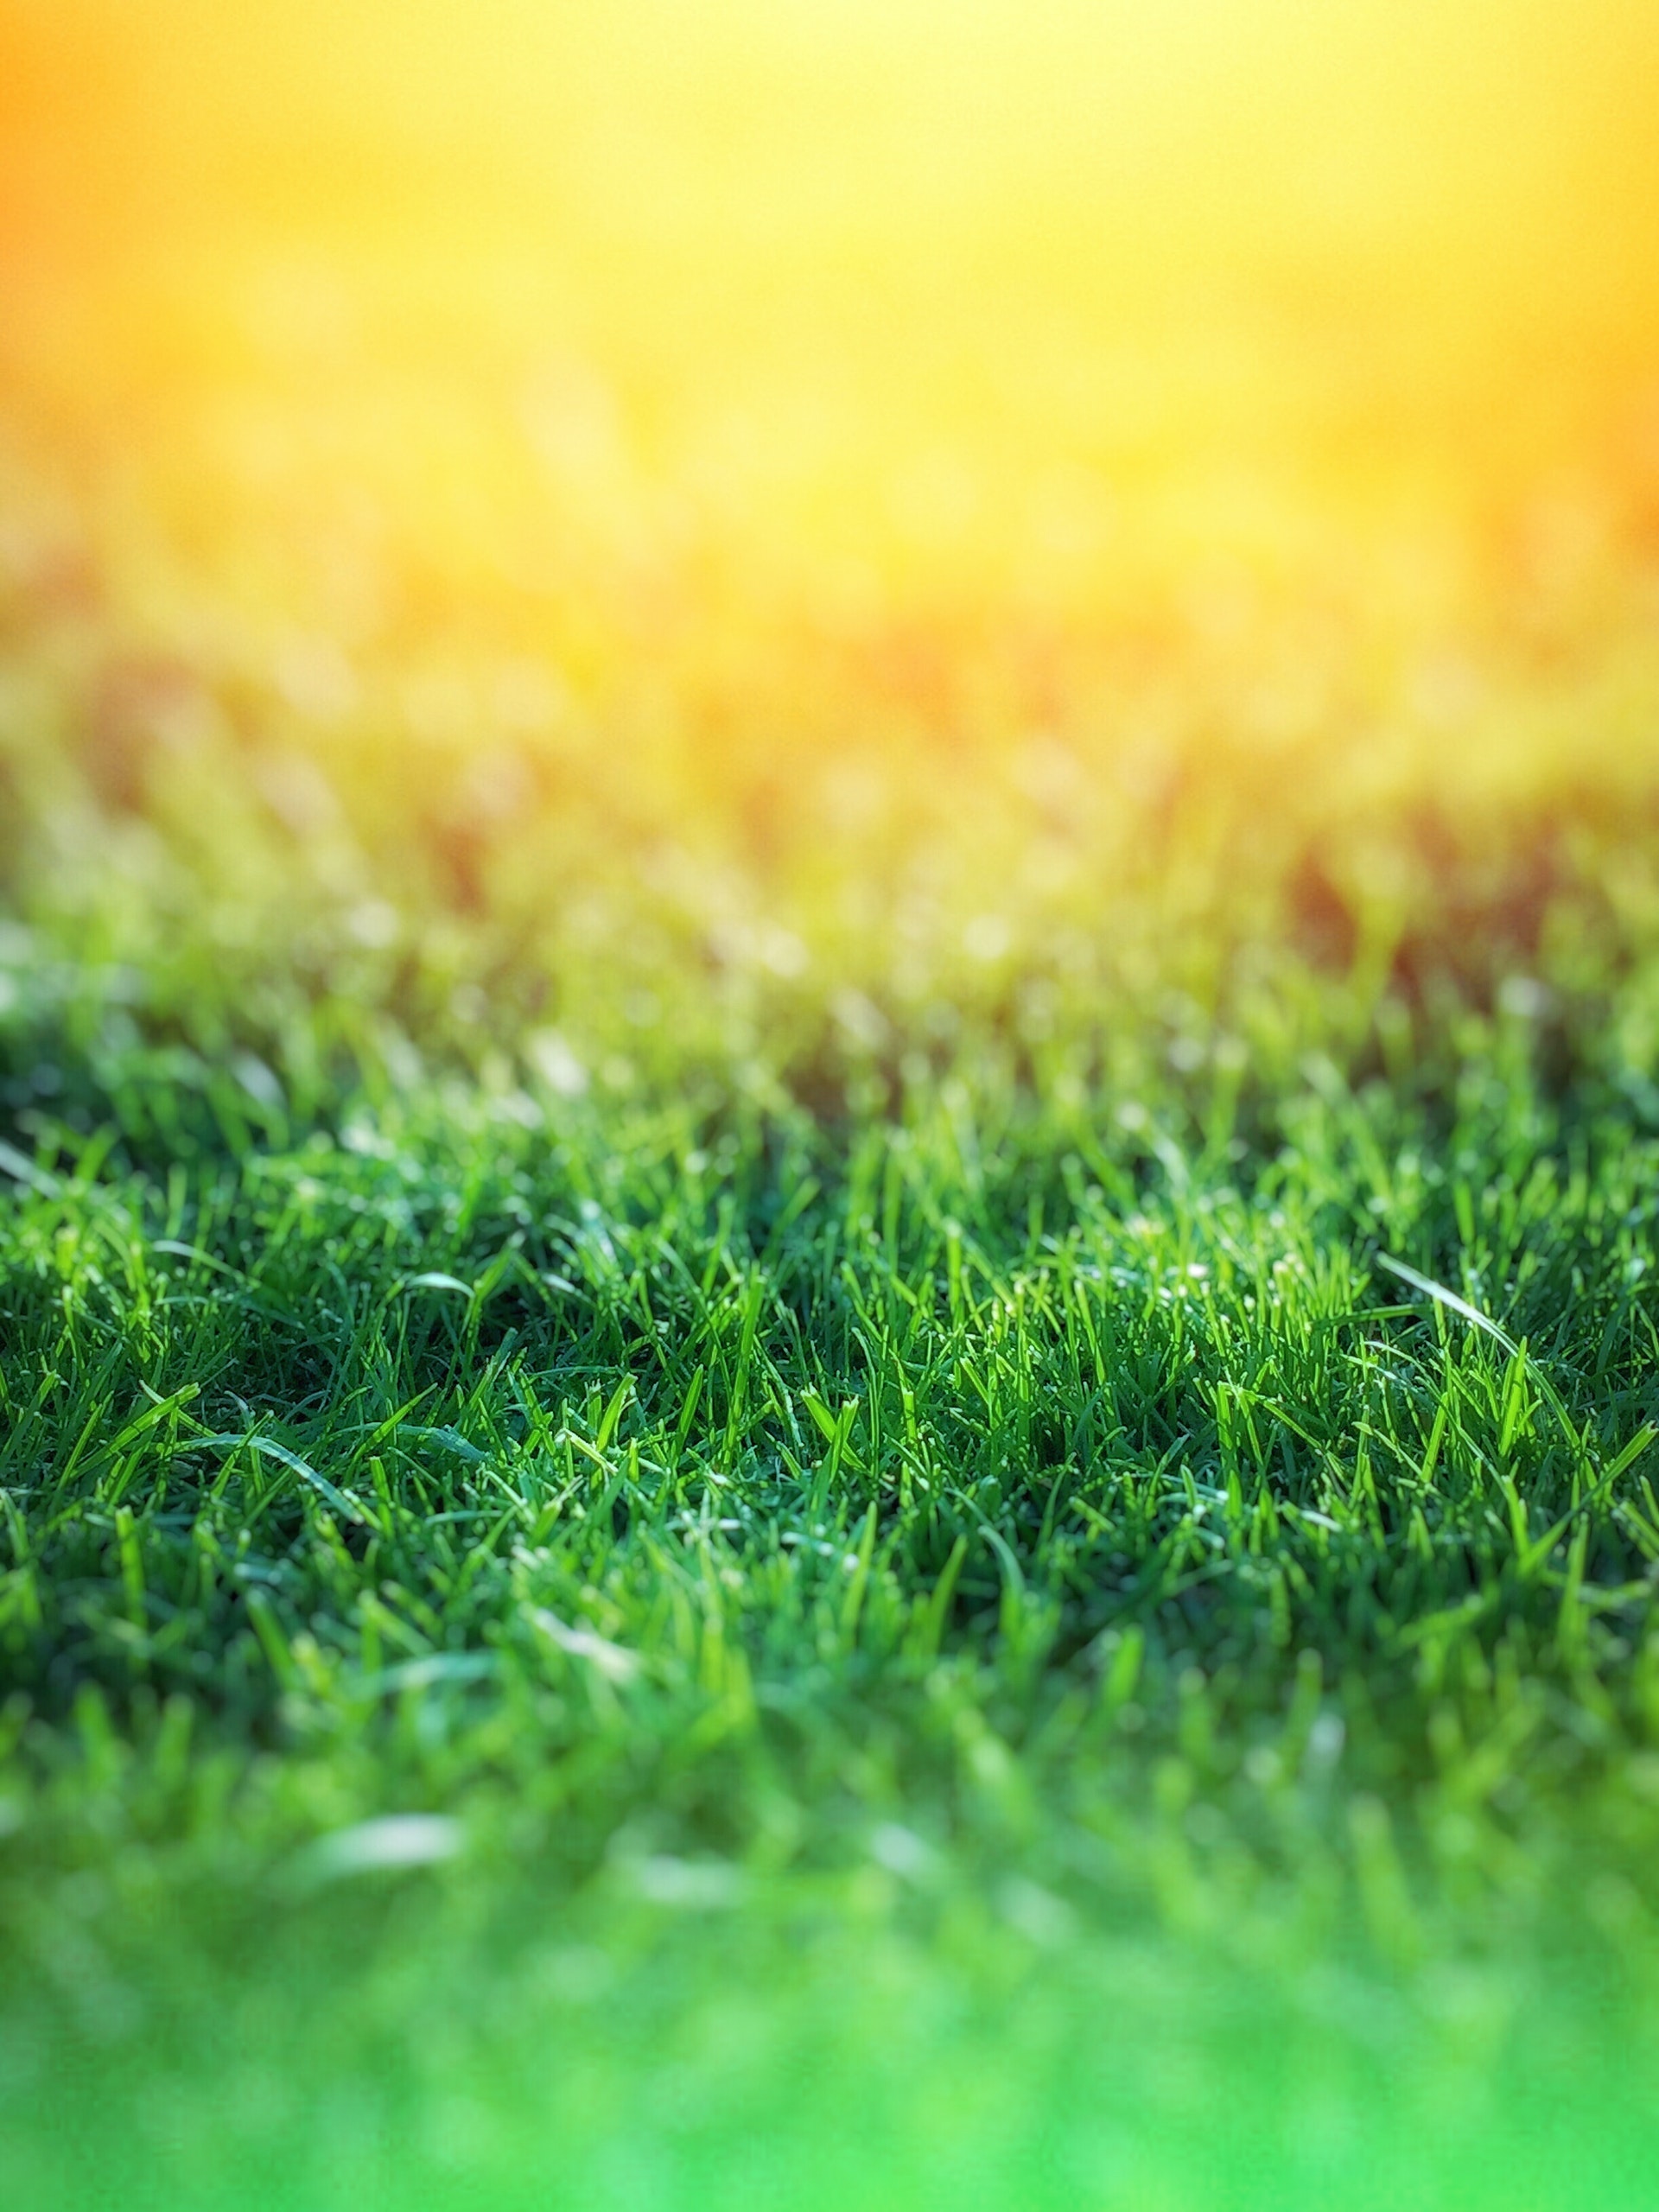 Lành đất trồng cỏ: Hãy nhìn tưởng tượng về một bãi cỏ xanh mướt, mịn màng và đẹp mắt. Điều quan trọng nhất để có được điều đó là đất được chuẩn bị tốt. Hãy xem hình ảnh về các loại cỏ trồng trên đất đã được làm lành đúng cách và tự hào về điều đó.